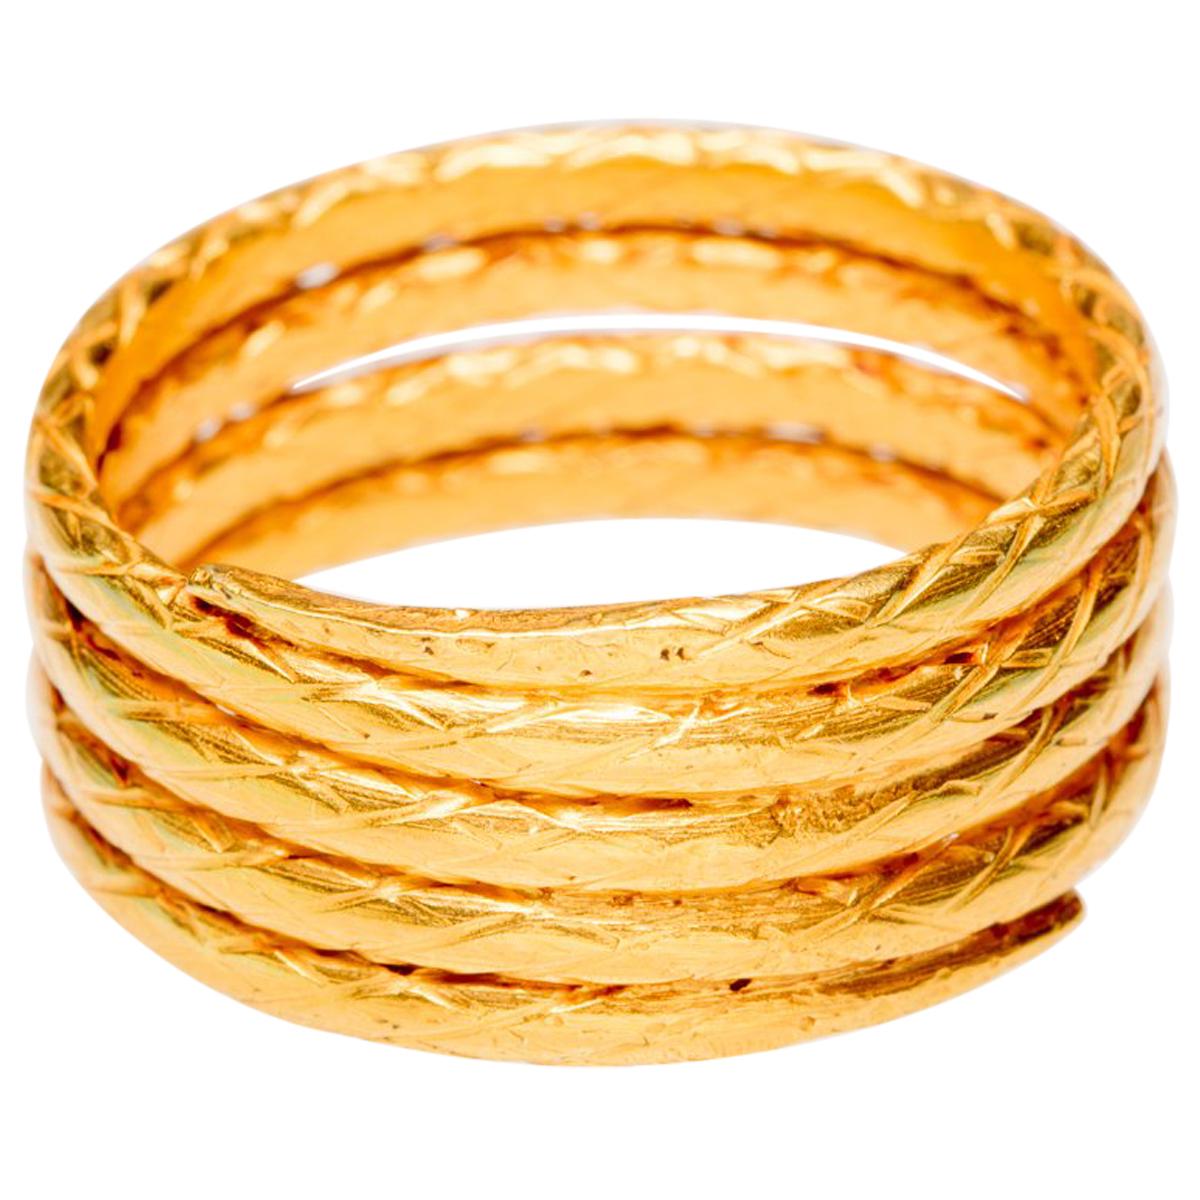 22 Karat Gold Coil Band Ring